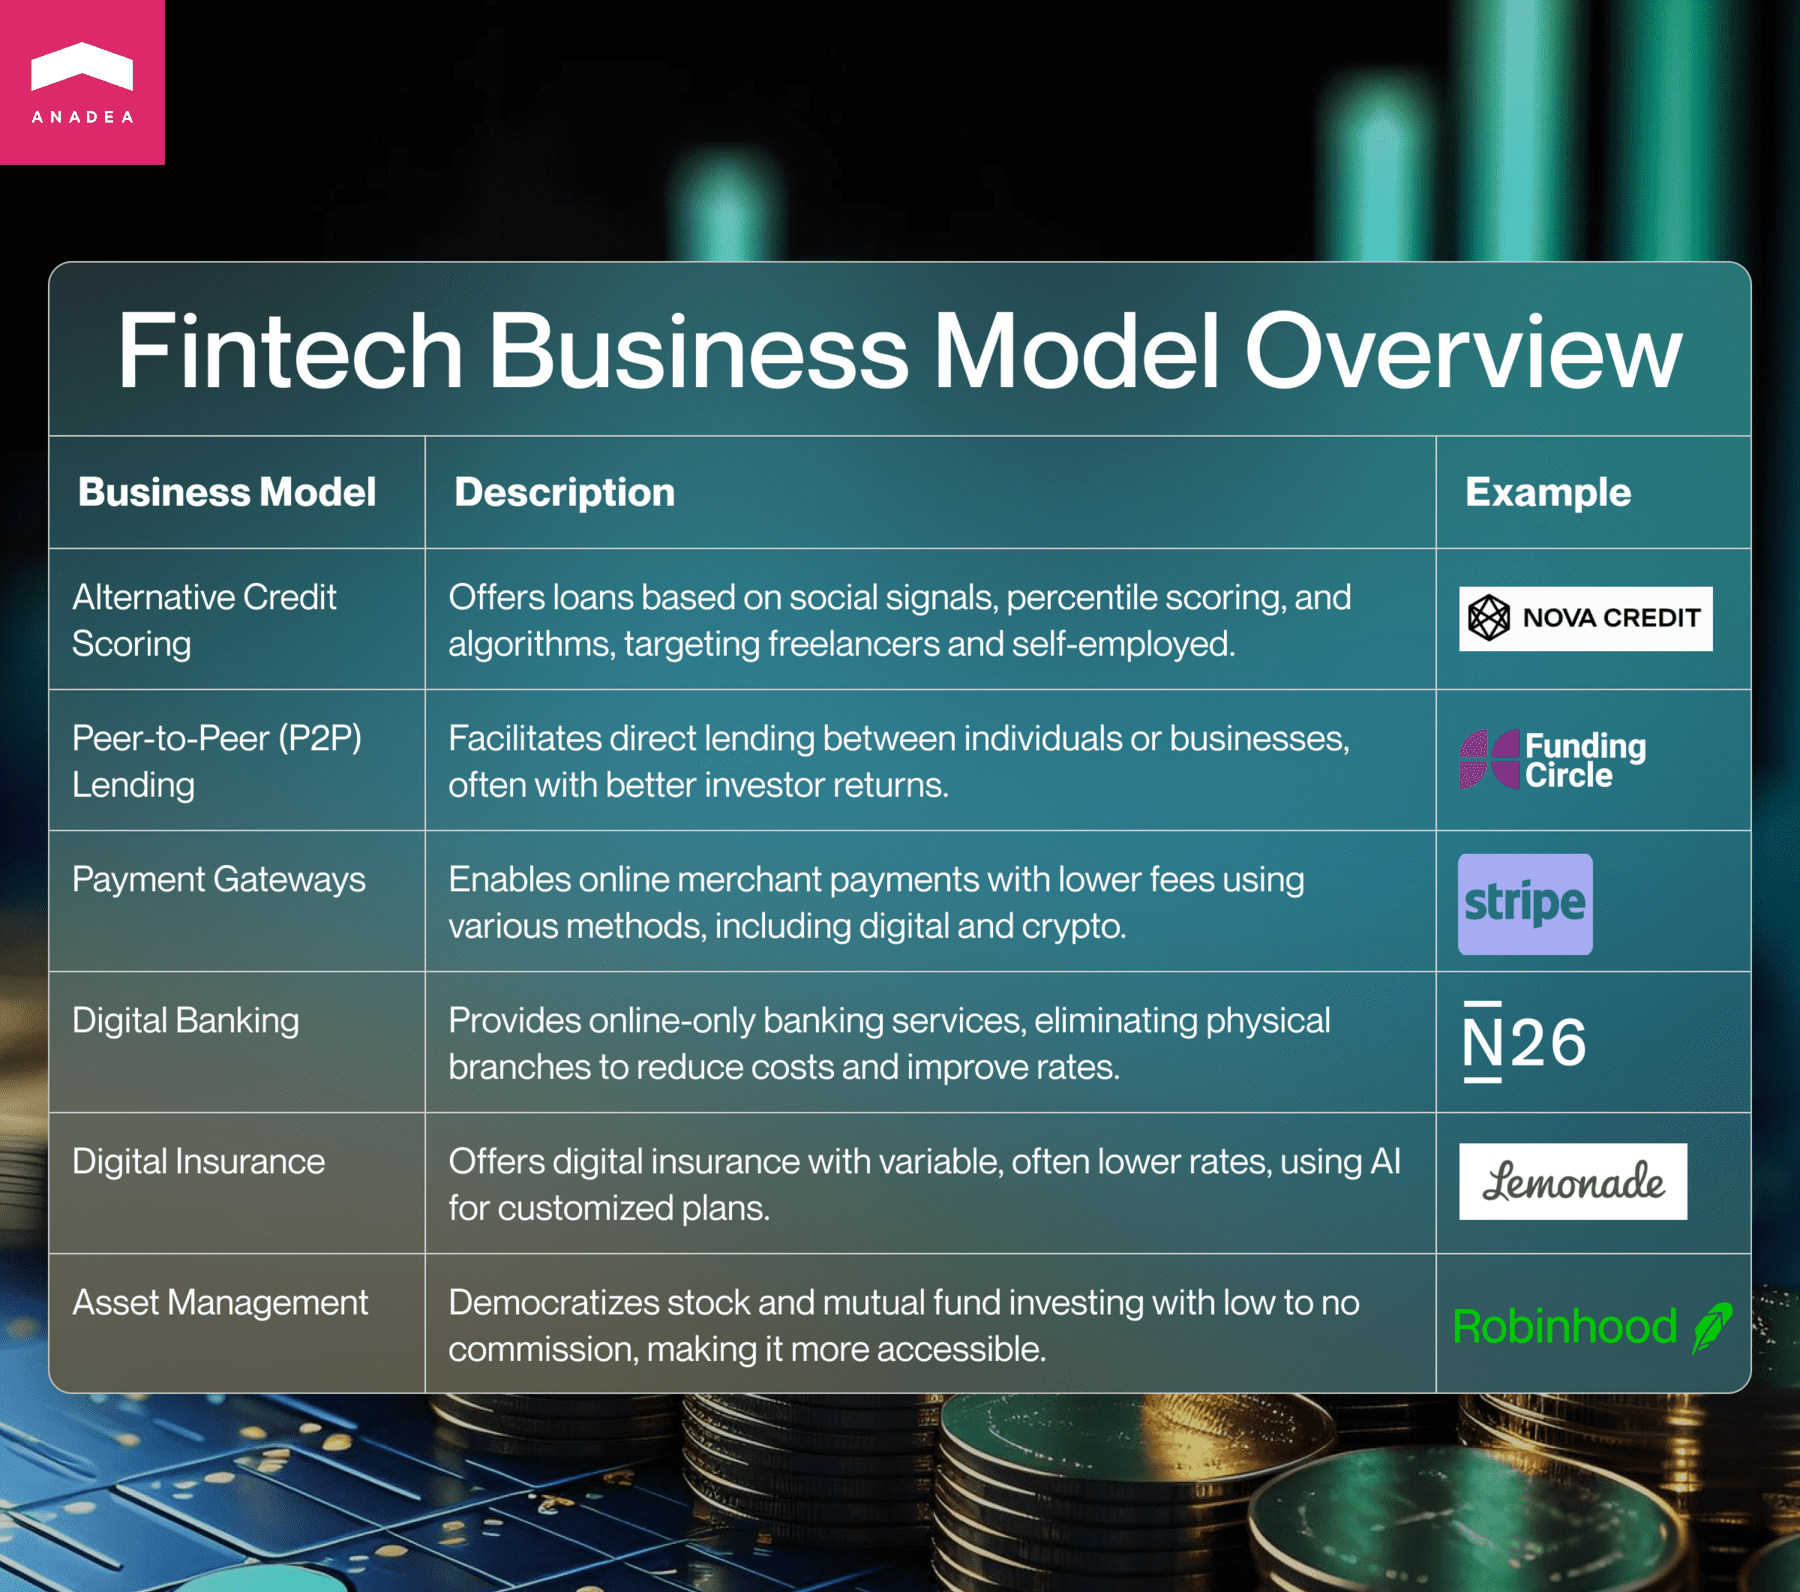 Fintech business models overview